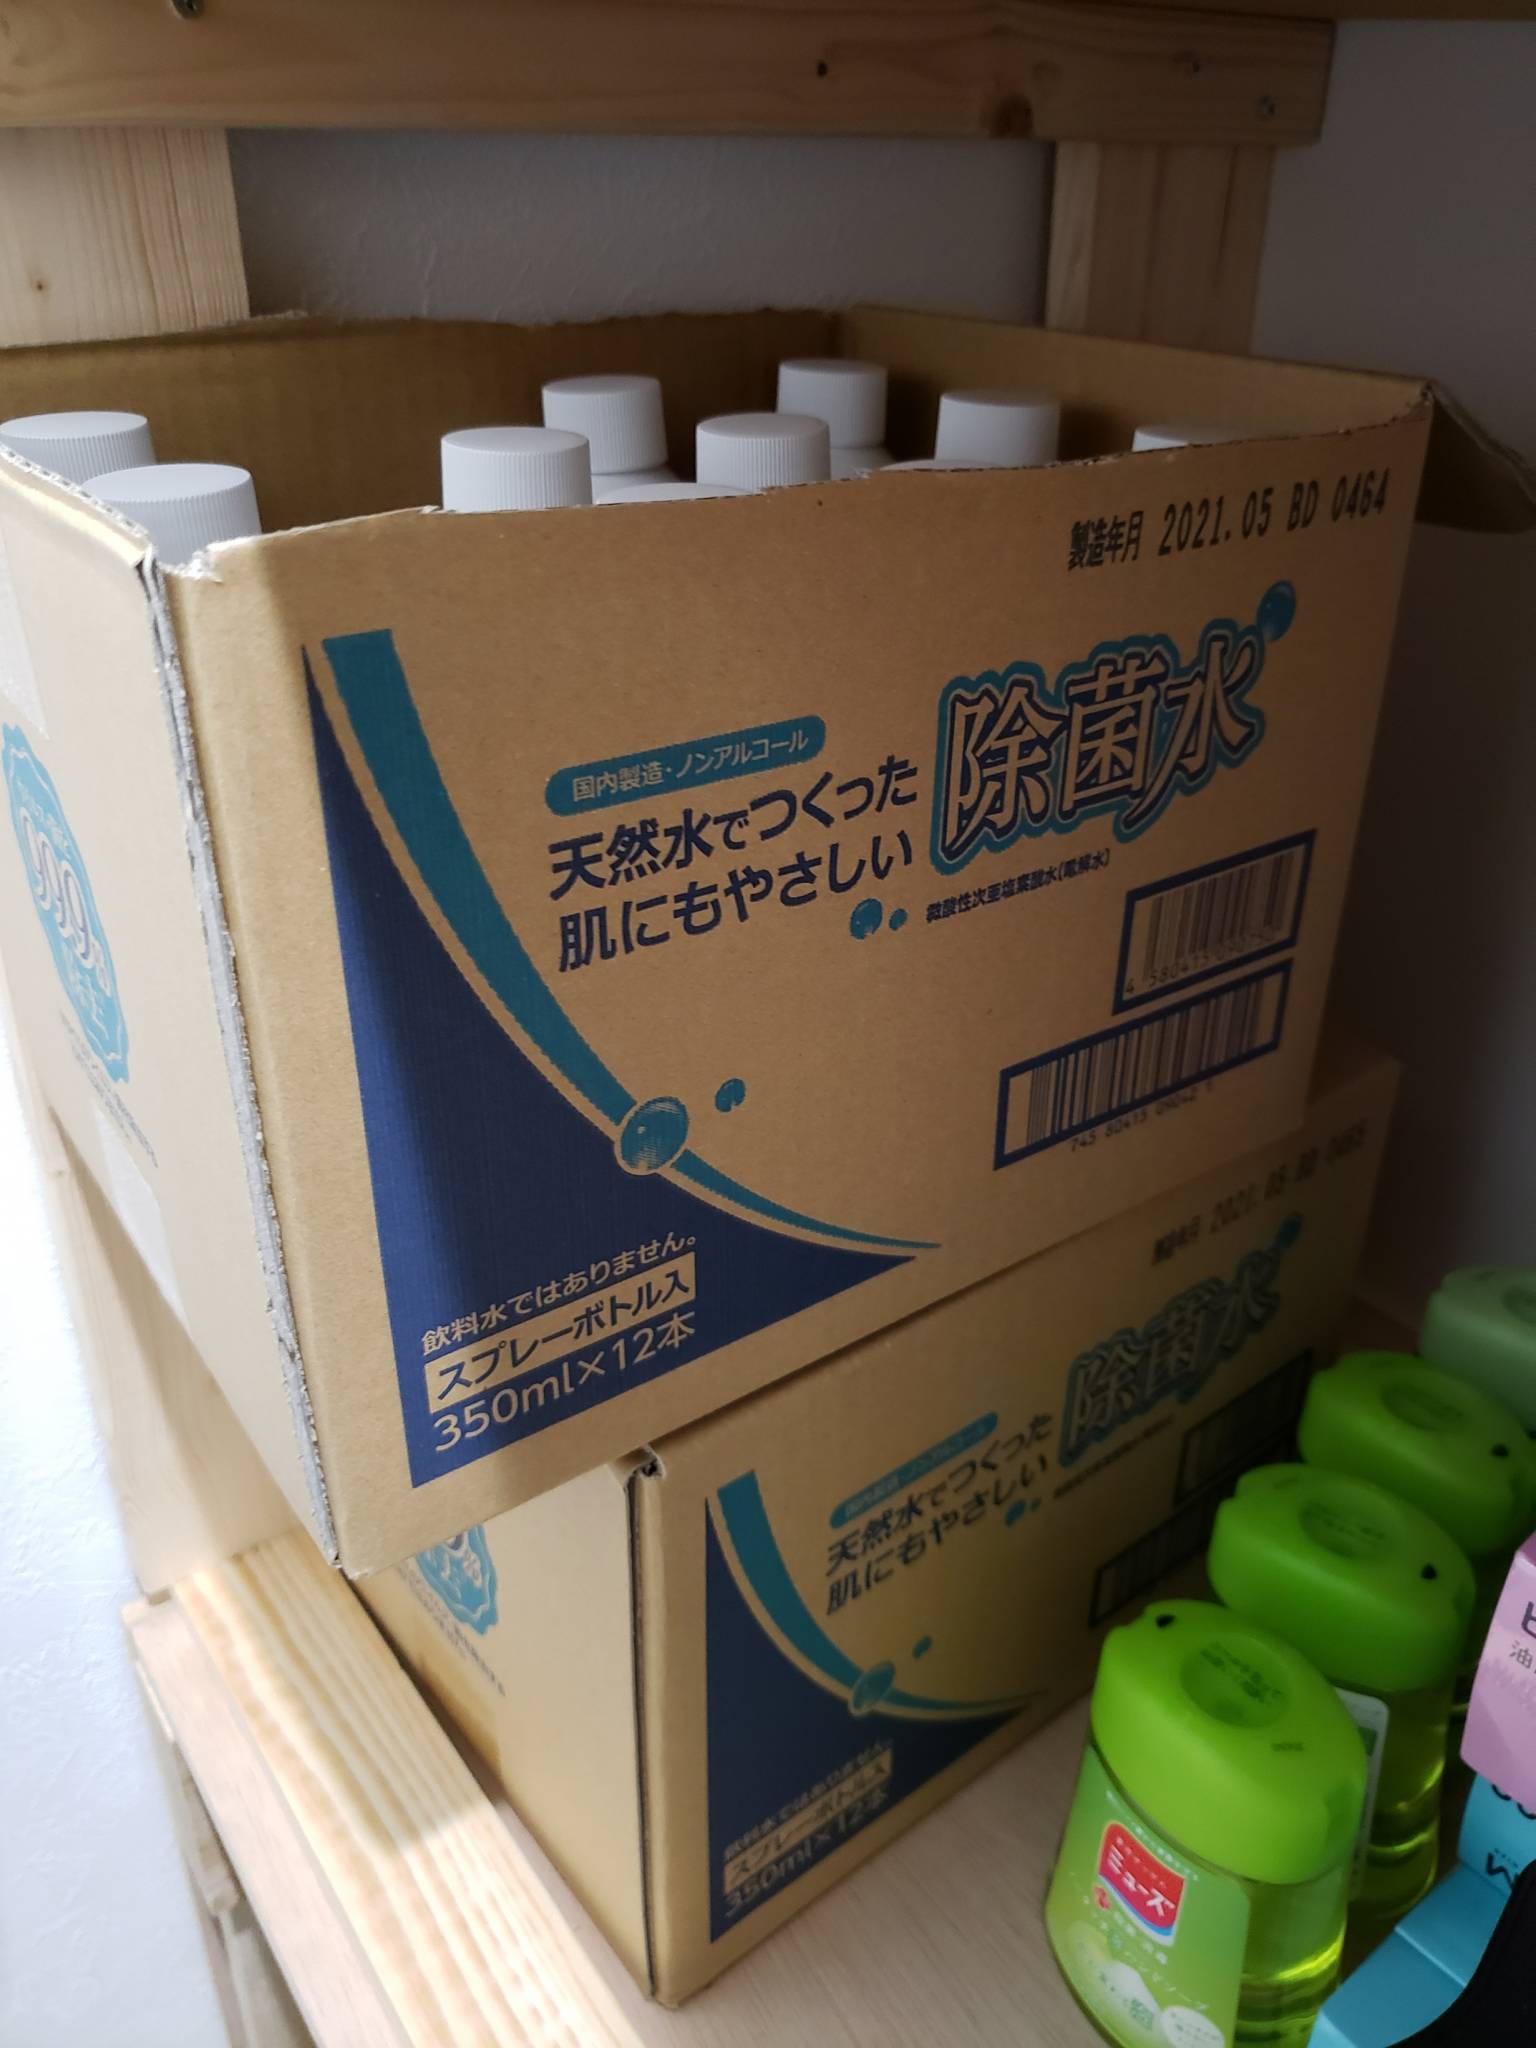 新型コロナ感染防止対応の「除菌水」を、富士山銘水株式会社様から寄贈していただきました